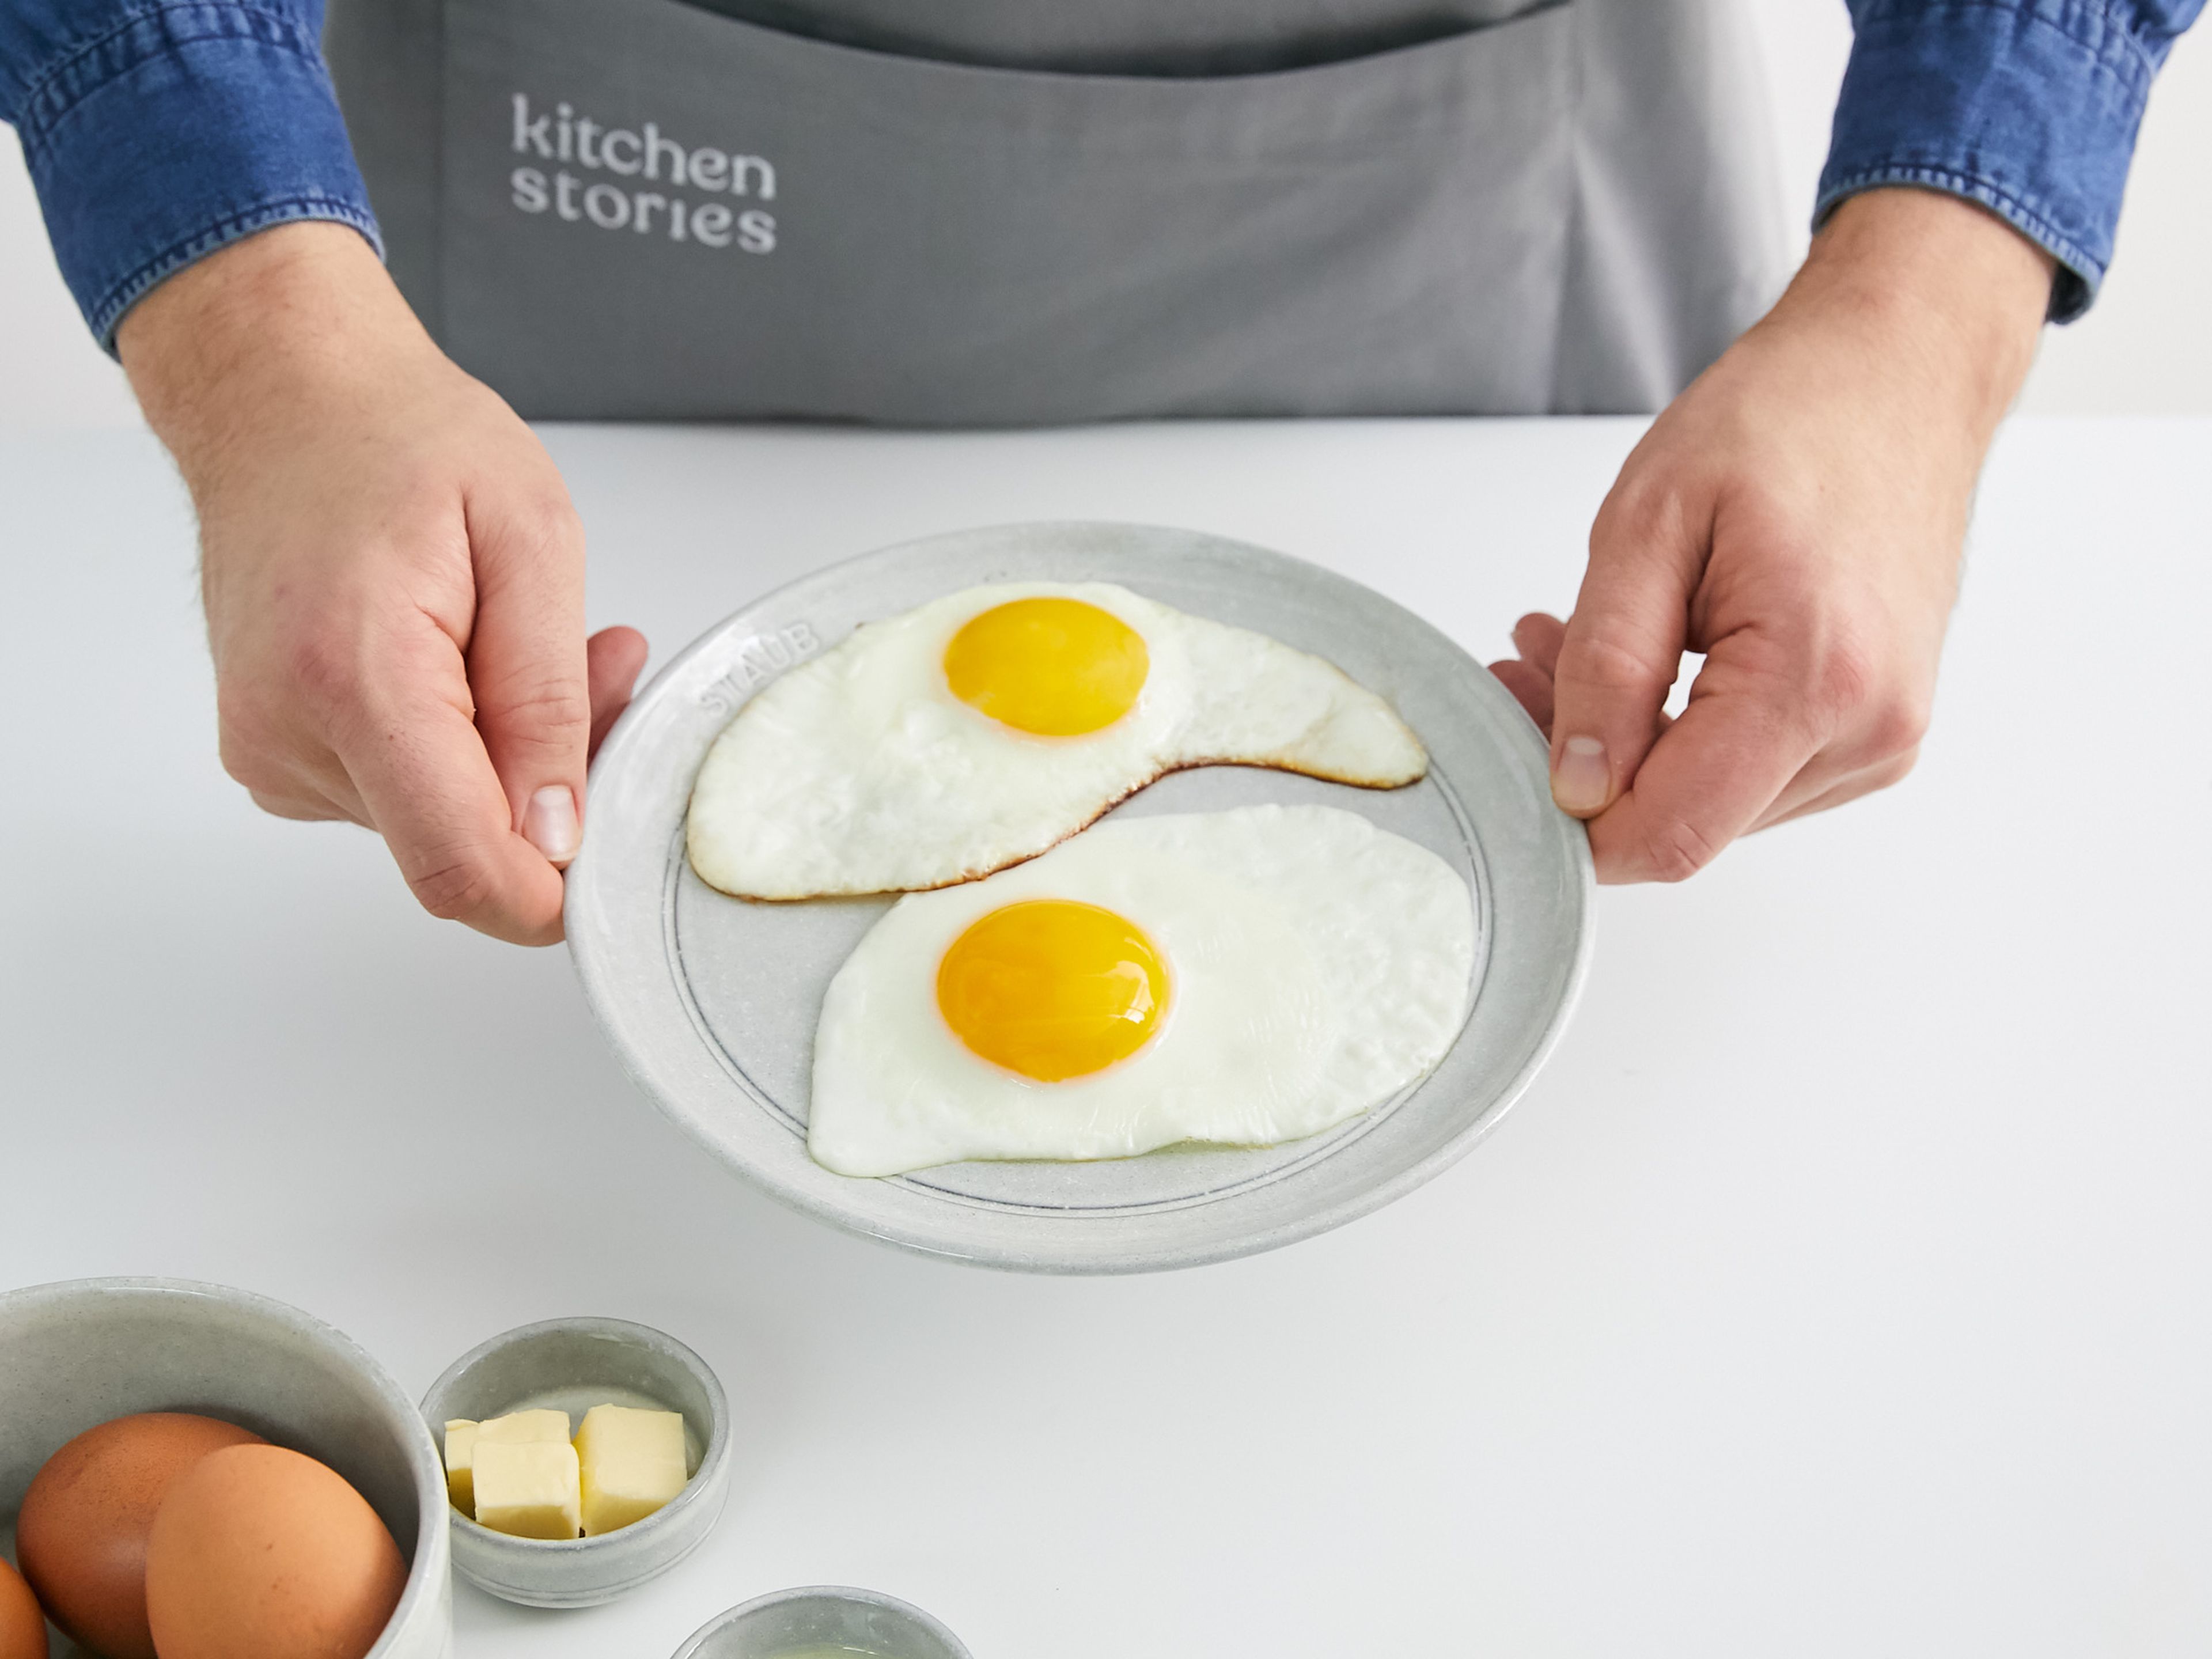 Für Spiegeleier, Öl in eine beschichtet Pfanne geben und mit einem Küchenpapier gleichmäßig verteilen, um überschüssiges Öl abzunehmen. Eier vorsichtig in die Pfanne geben. Bei niedriger Hitze braten, damit das Ei gleichmäßig stockt. In das Eiweiß stechen, damit sich die Hitze überall verteilen kann. Für ein knuspriges Spiegelei, etwas Butter in die Pfanne geben und die Hitze erhöhen. Ca. 2 Min. weiterbraten, damit das Eigelb trotzdem flüssig bleibt.